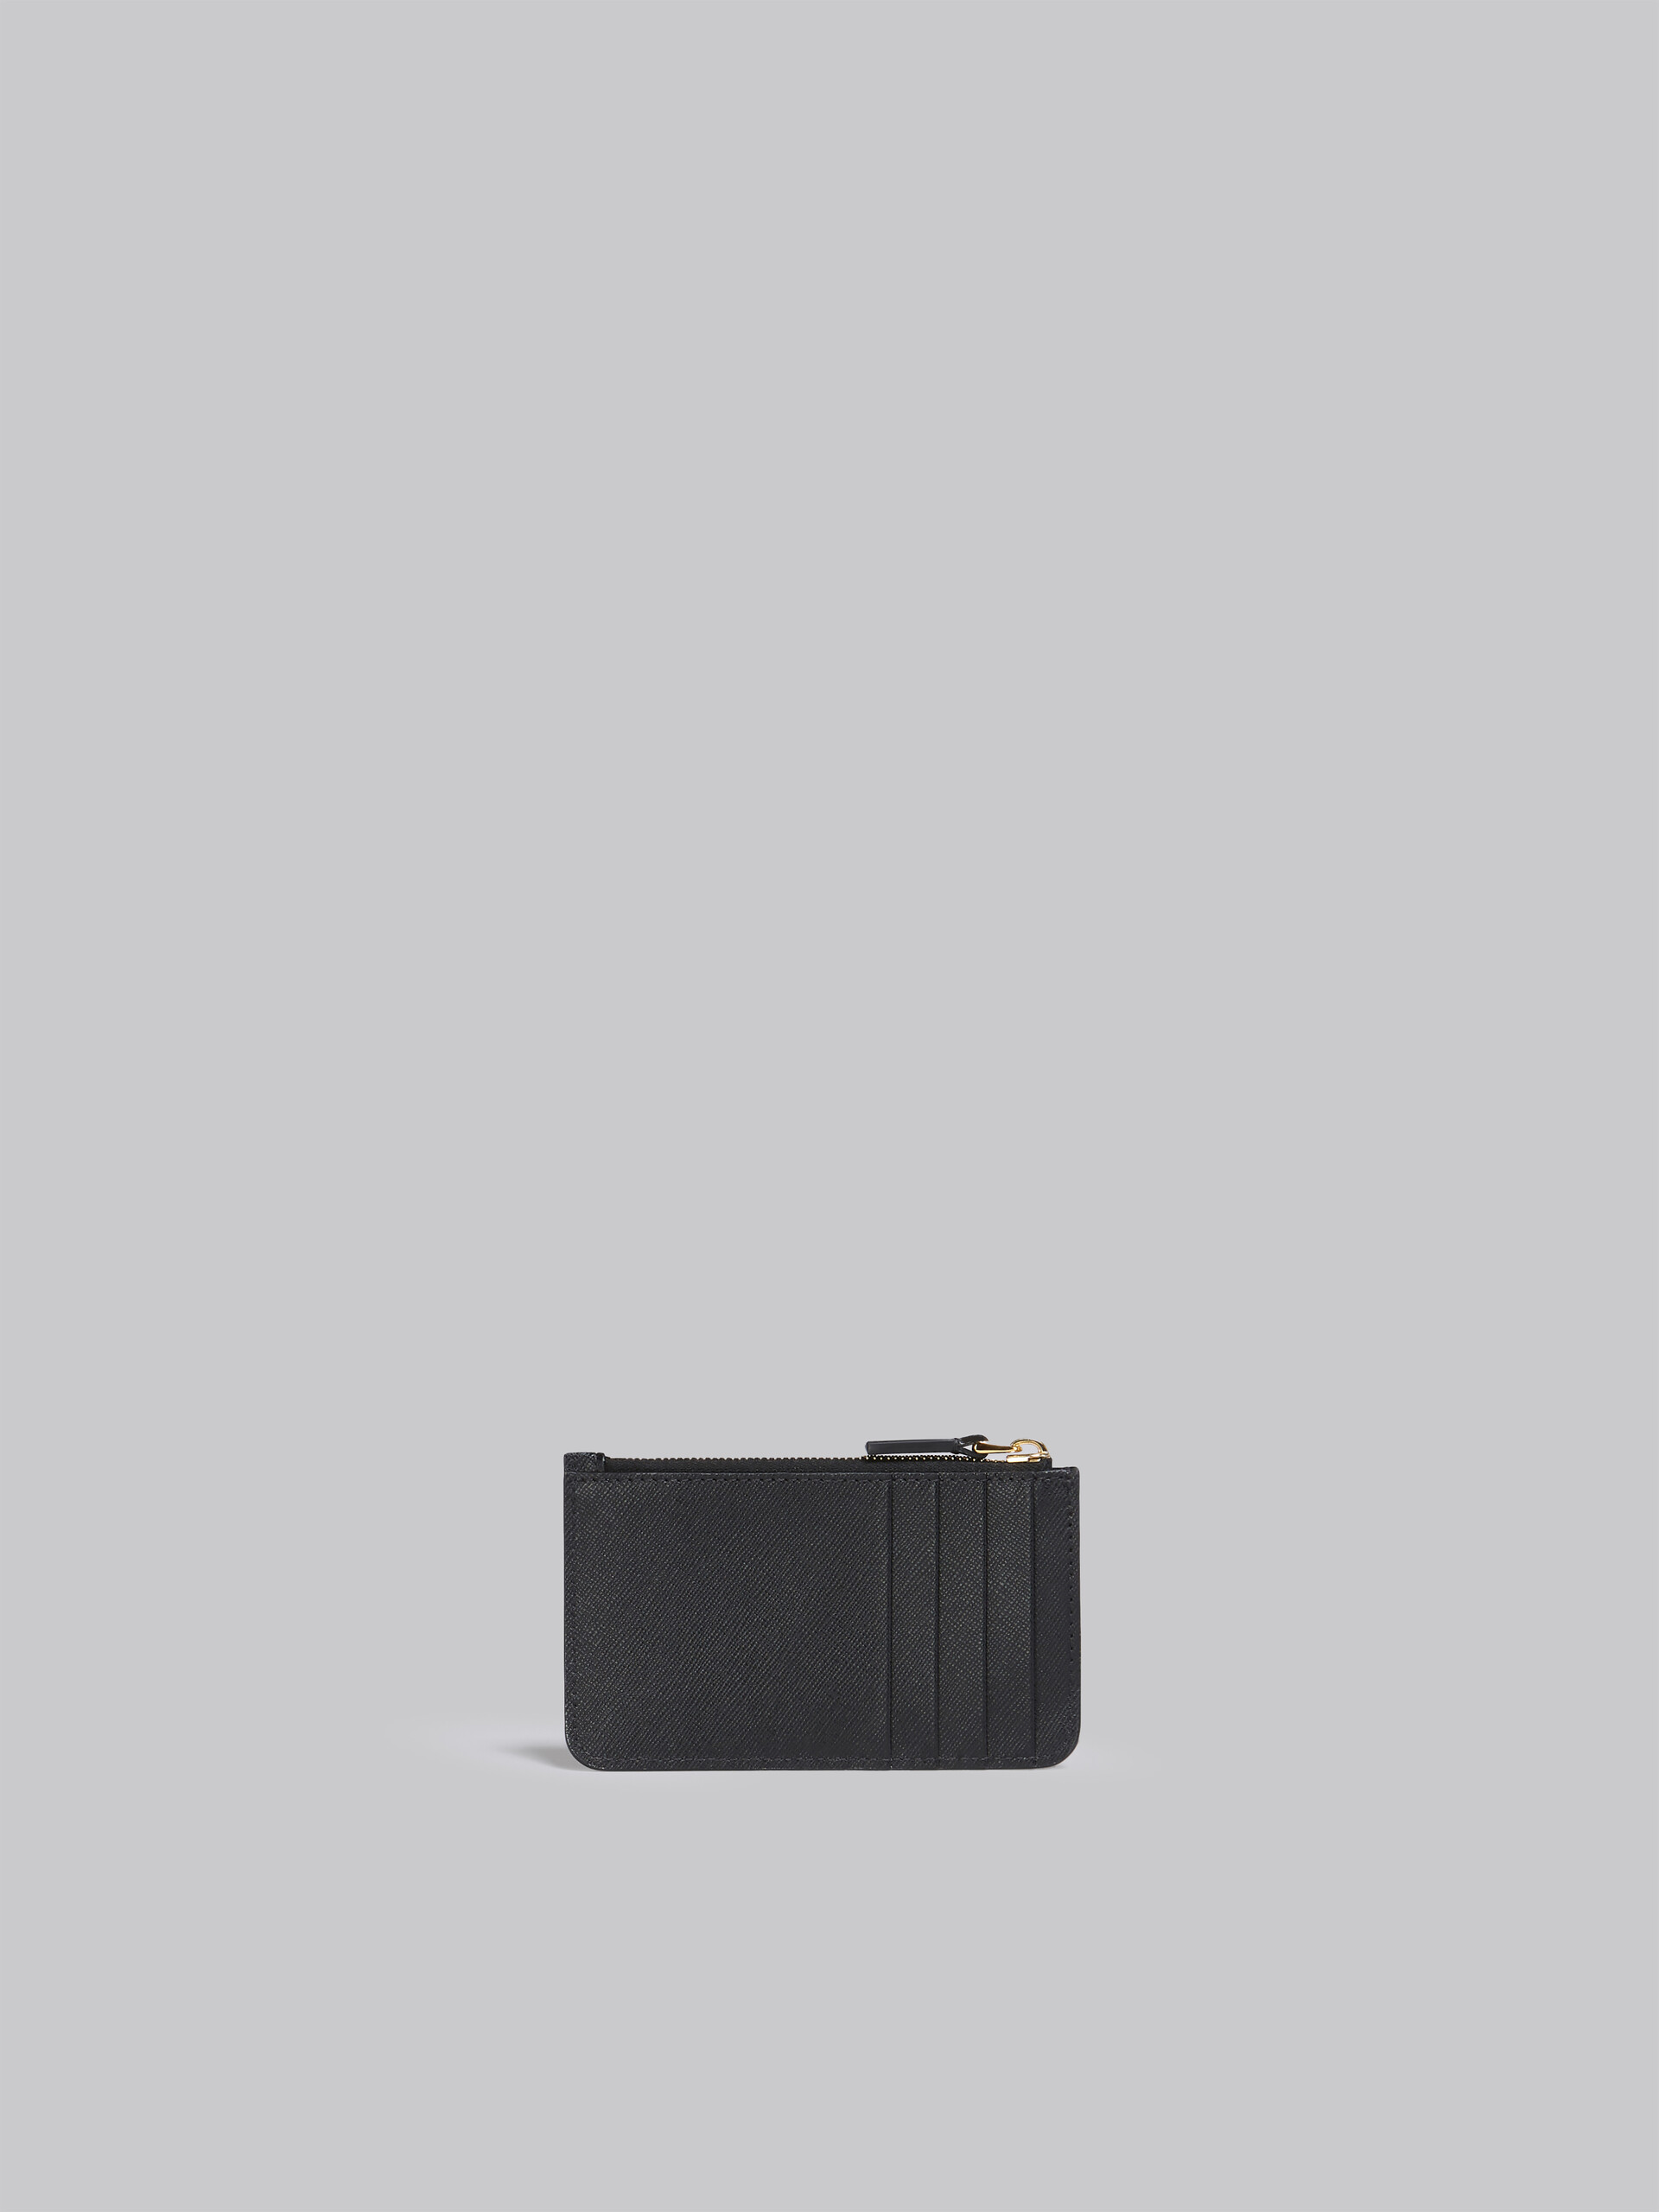 サフィアーノレザー製カードケース - 財布 - Image 3